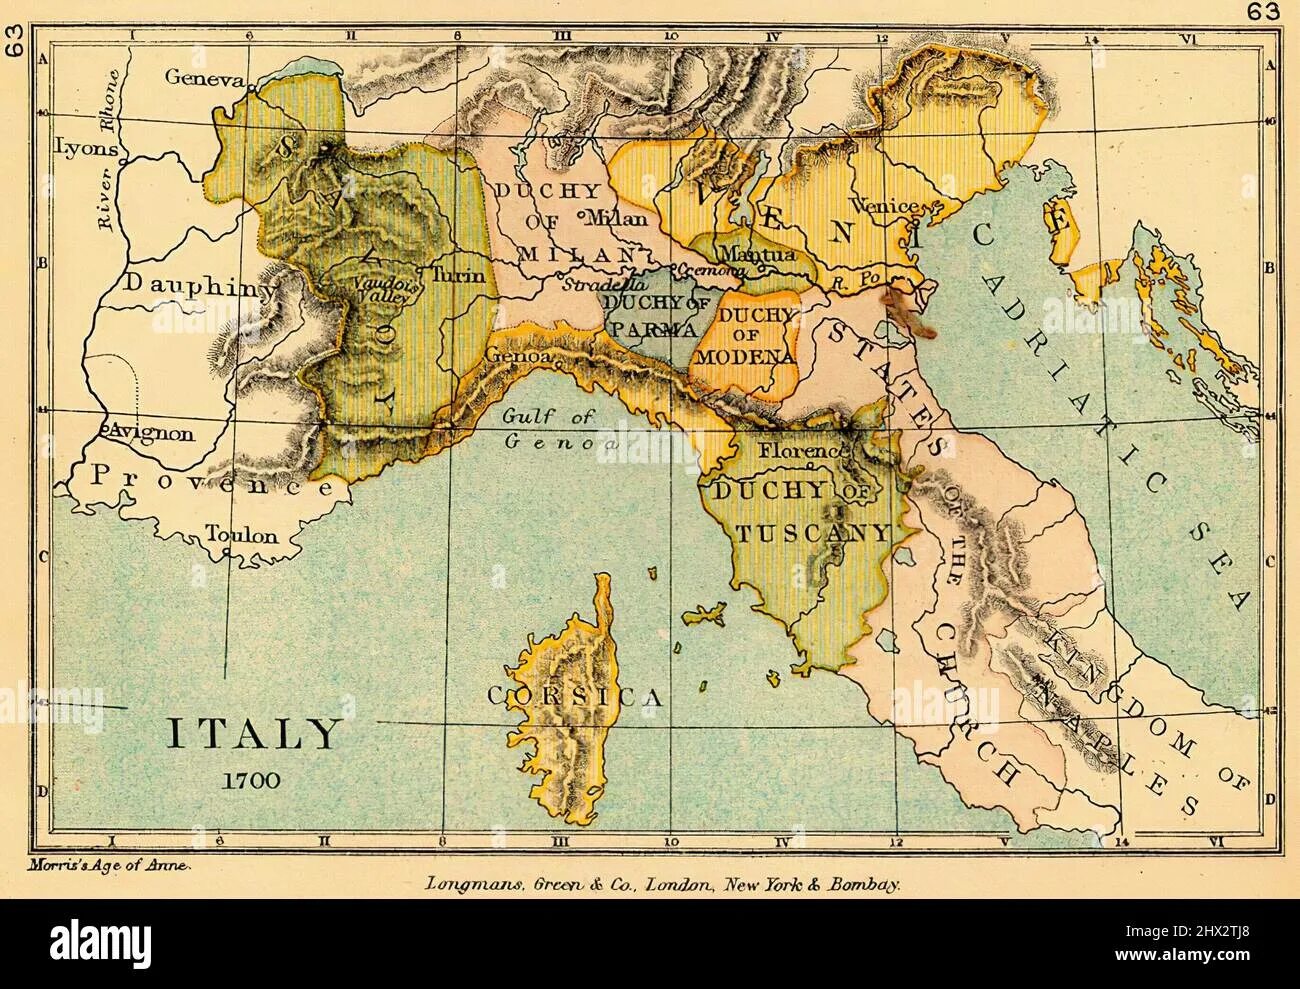 Карта Италии 1700. Италия 1700 года. Италия в 1700 году карта. Карта Италии 1600 год.